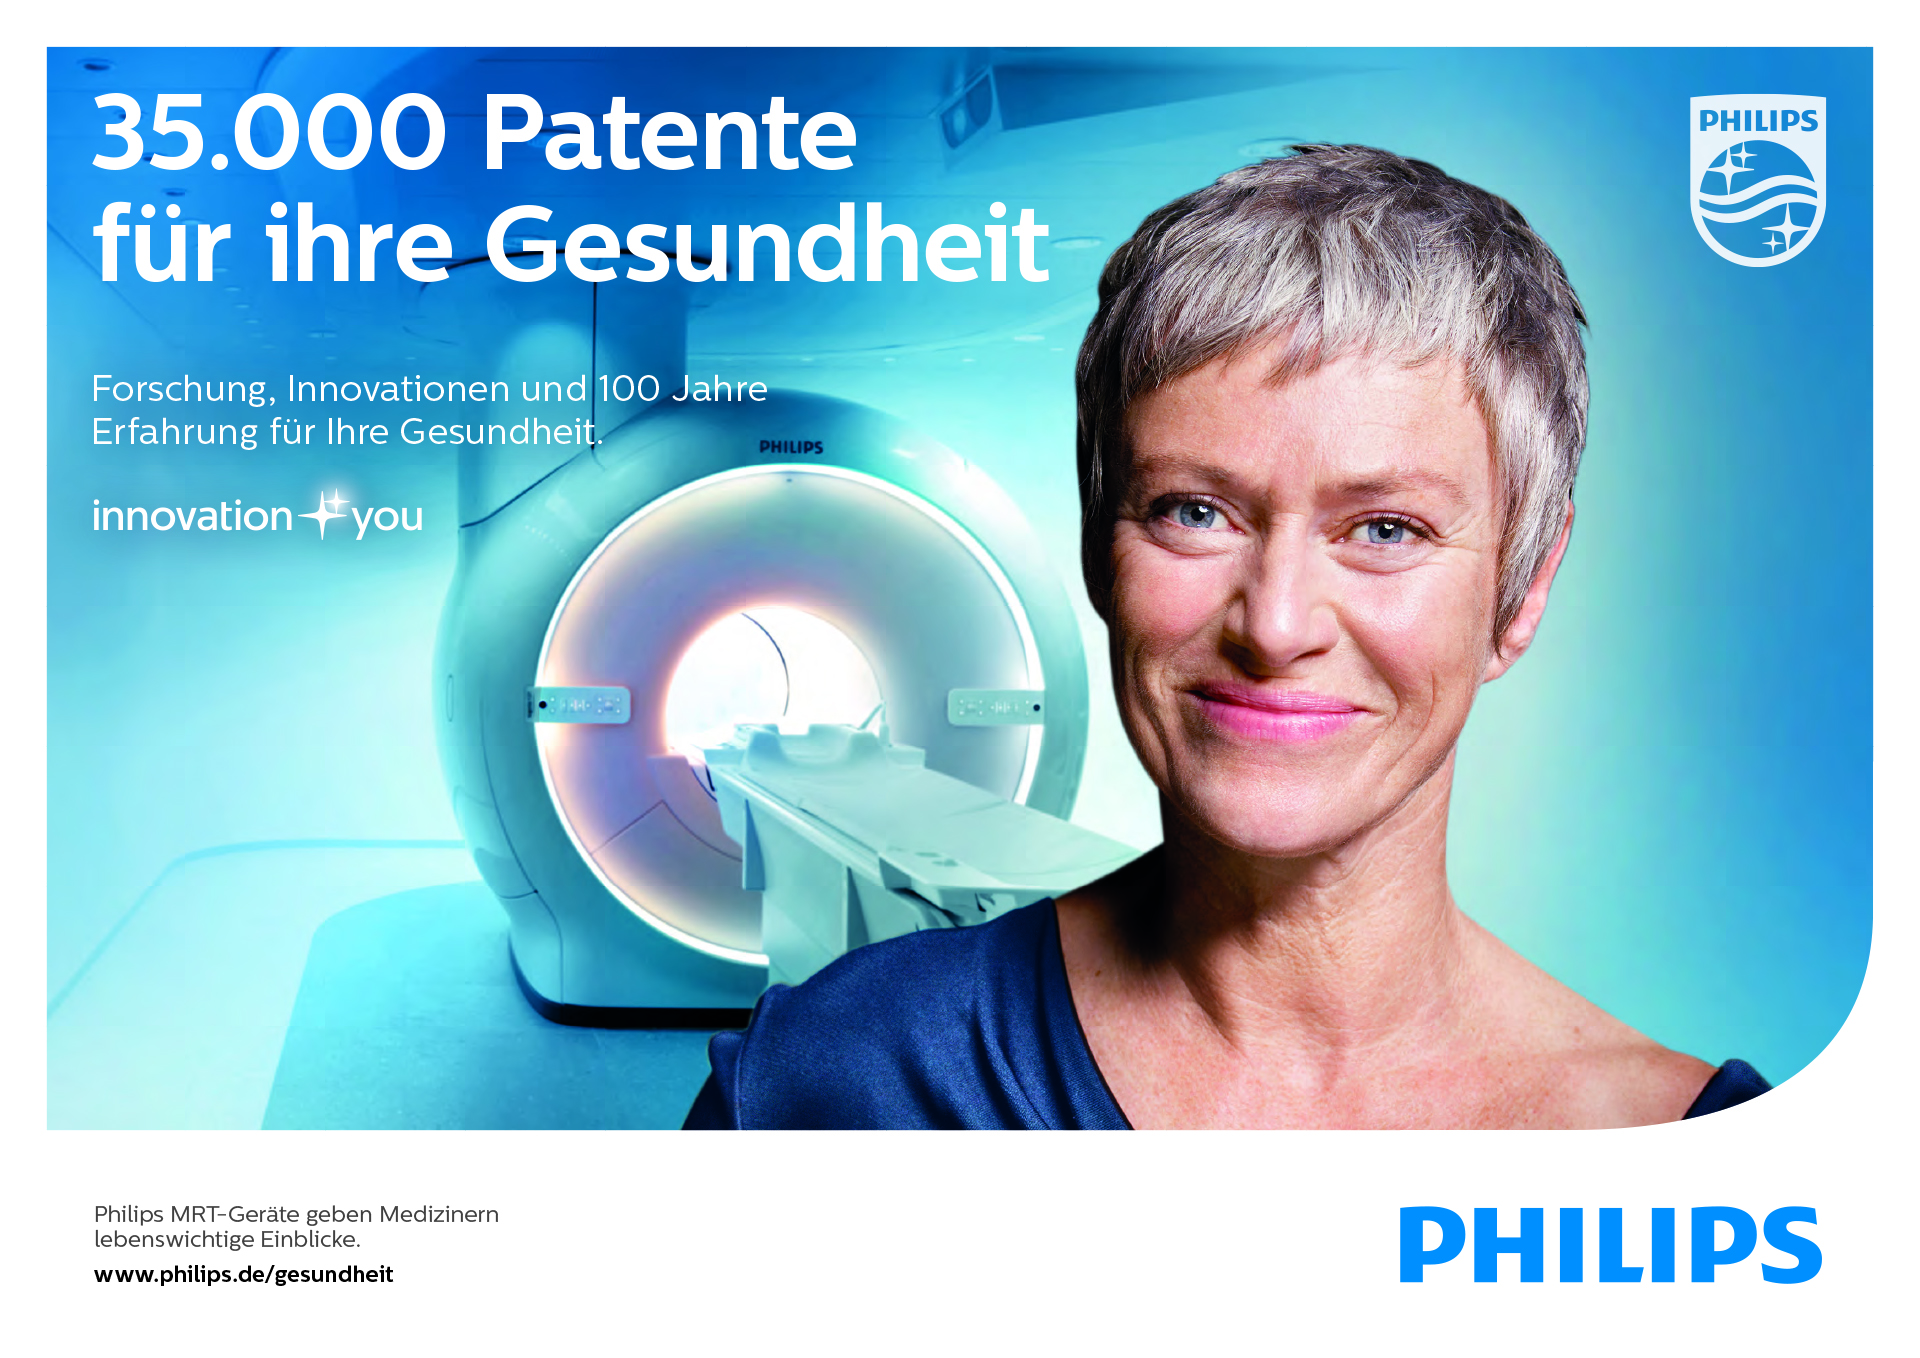 Stammagentur Ogilvy positioniert die Marke Philips im Gesundheitsmarkt (Foto: Philips)